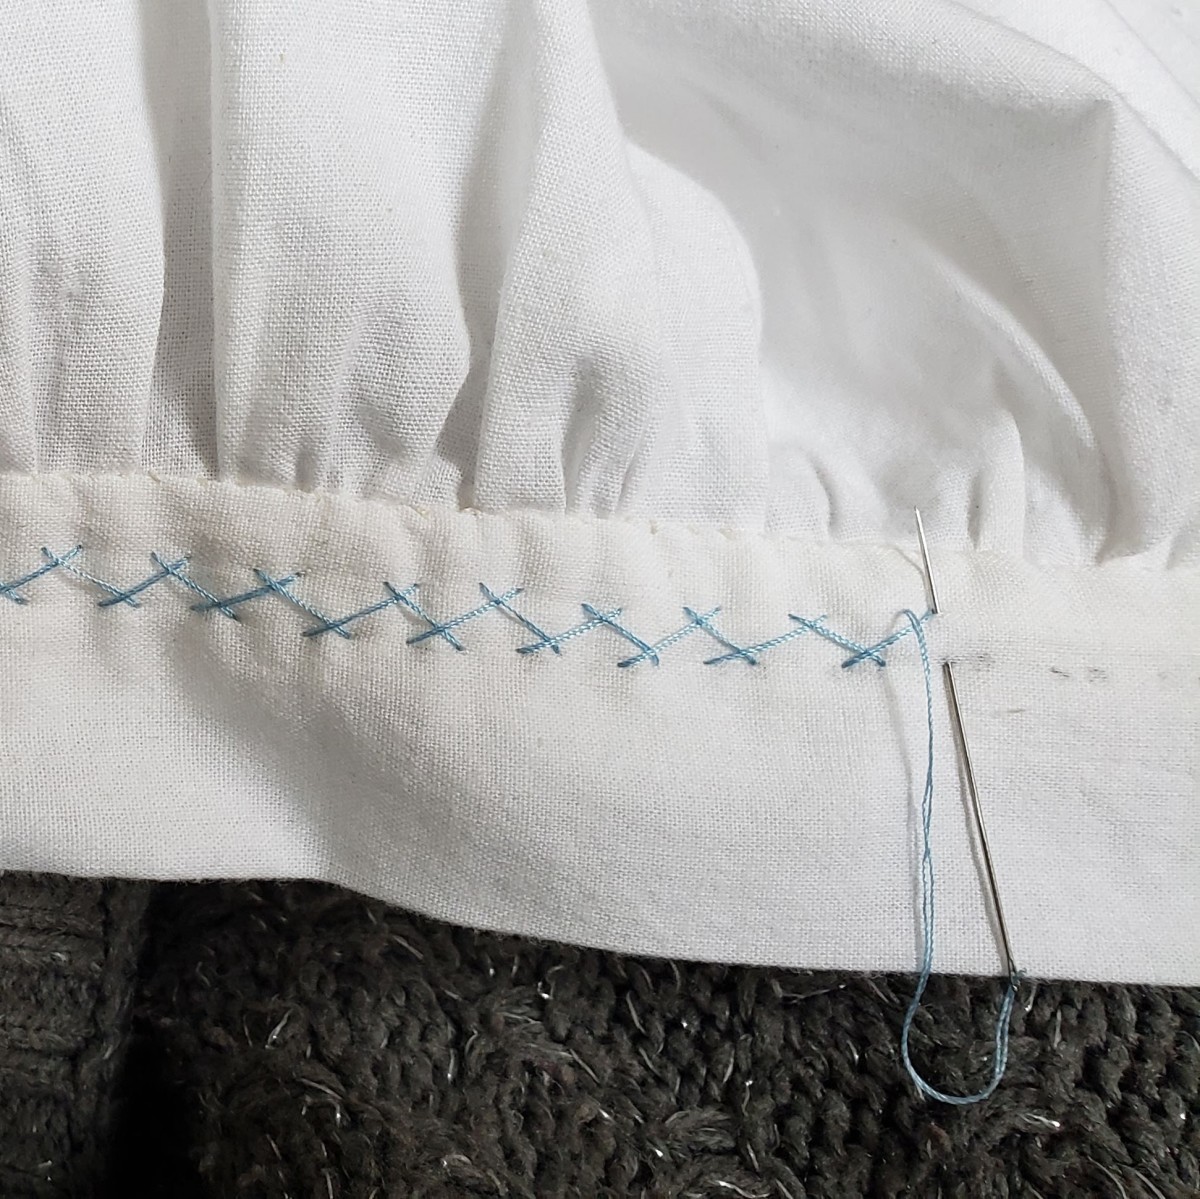 Hand Embroidery: How to Make a Herringbone Stitch